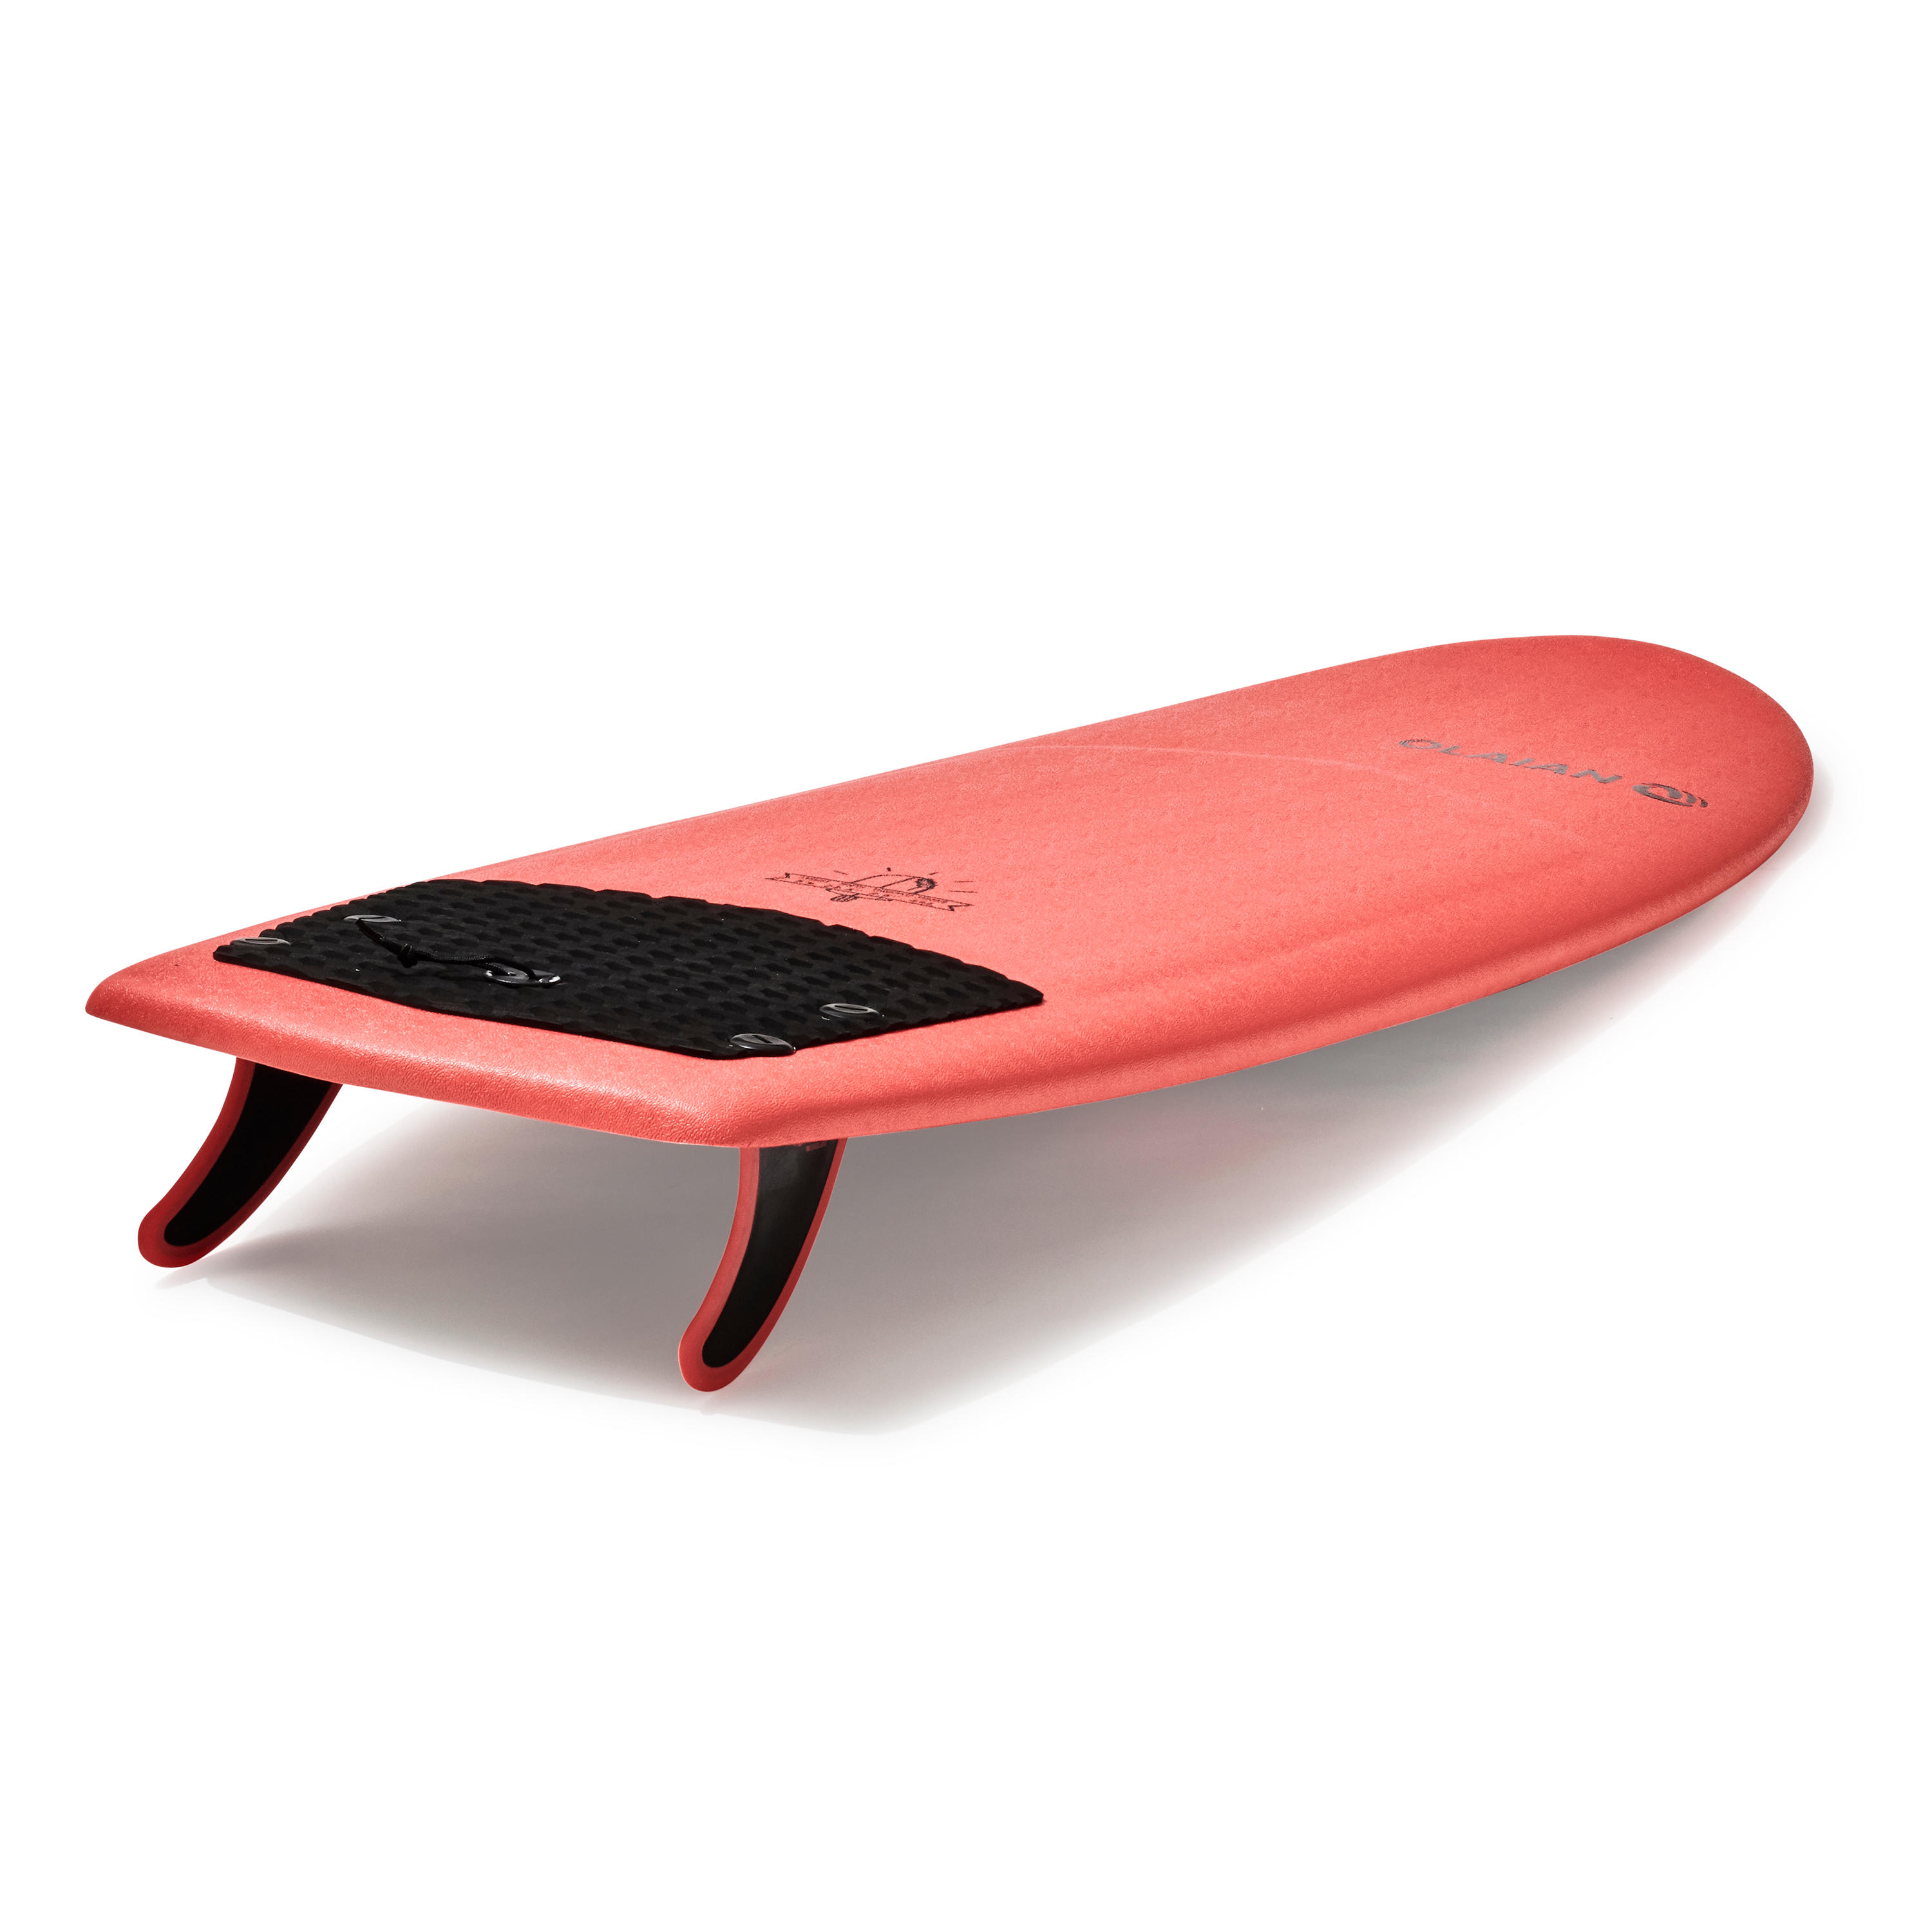 FOAM SURFBOARD 900 5'4" with 2 fins. 4/9